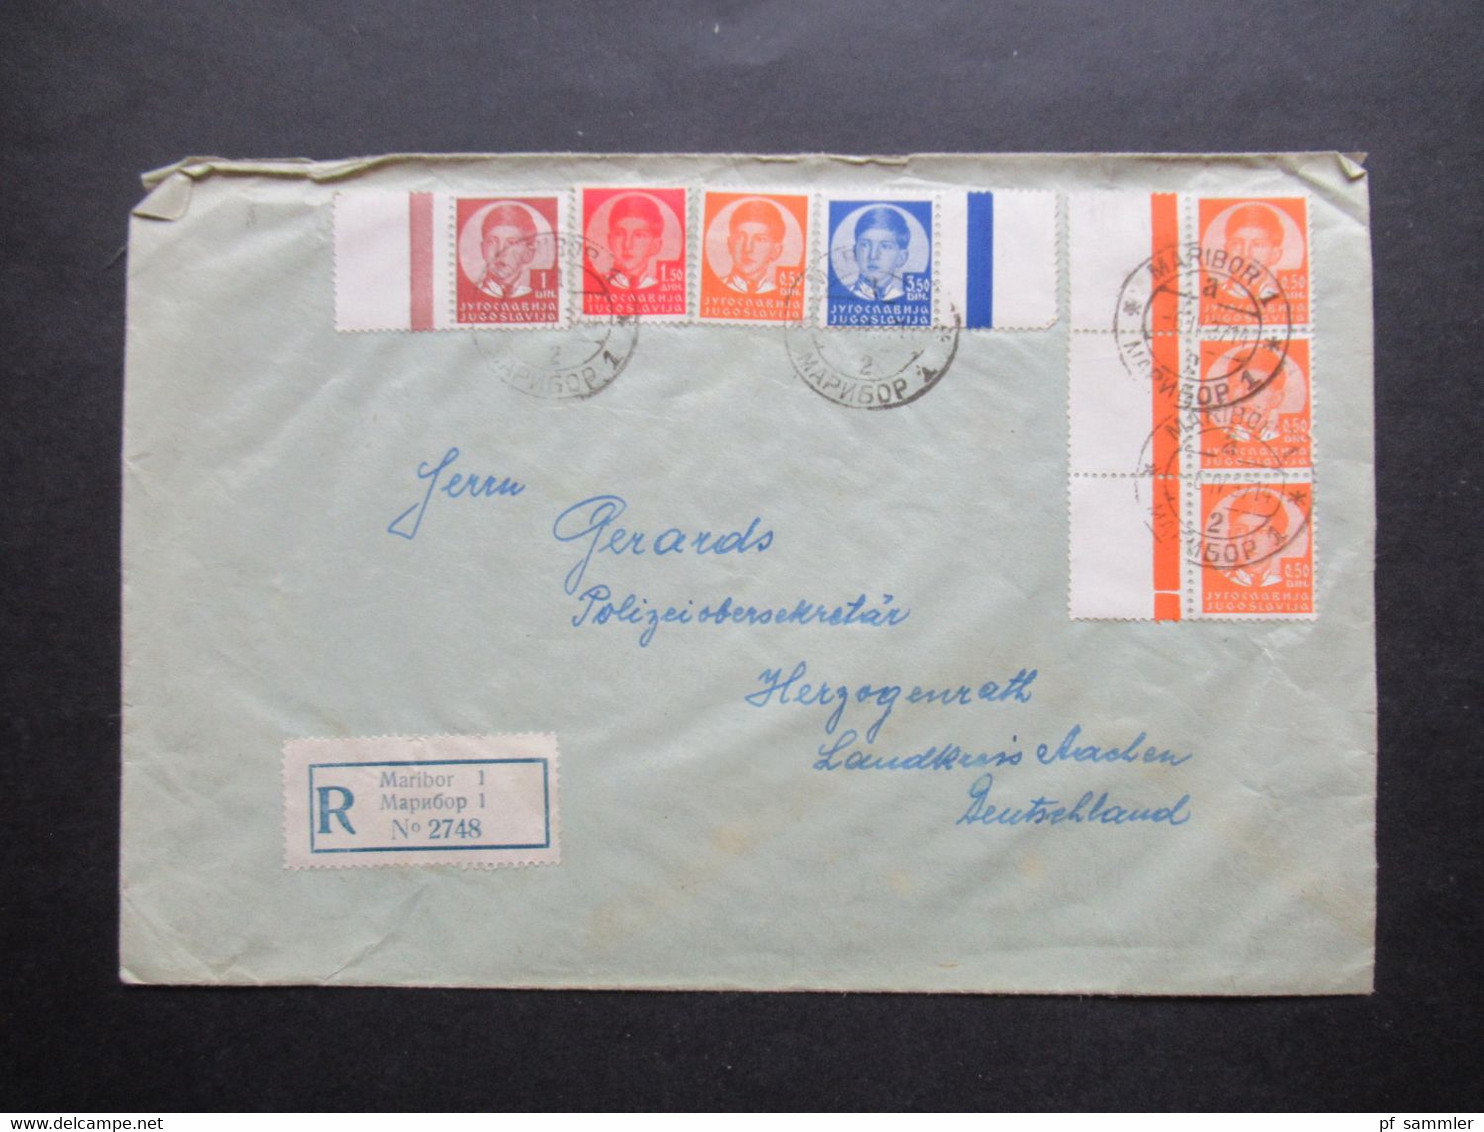 Jugoslawien 1937 Freimarken König Peter II. Randstücke / Randbedruckung / Leerfelder Einschreiben Maribor 1 - Briefe U. Dokumente